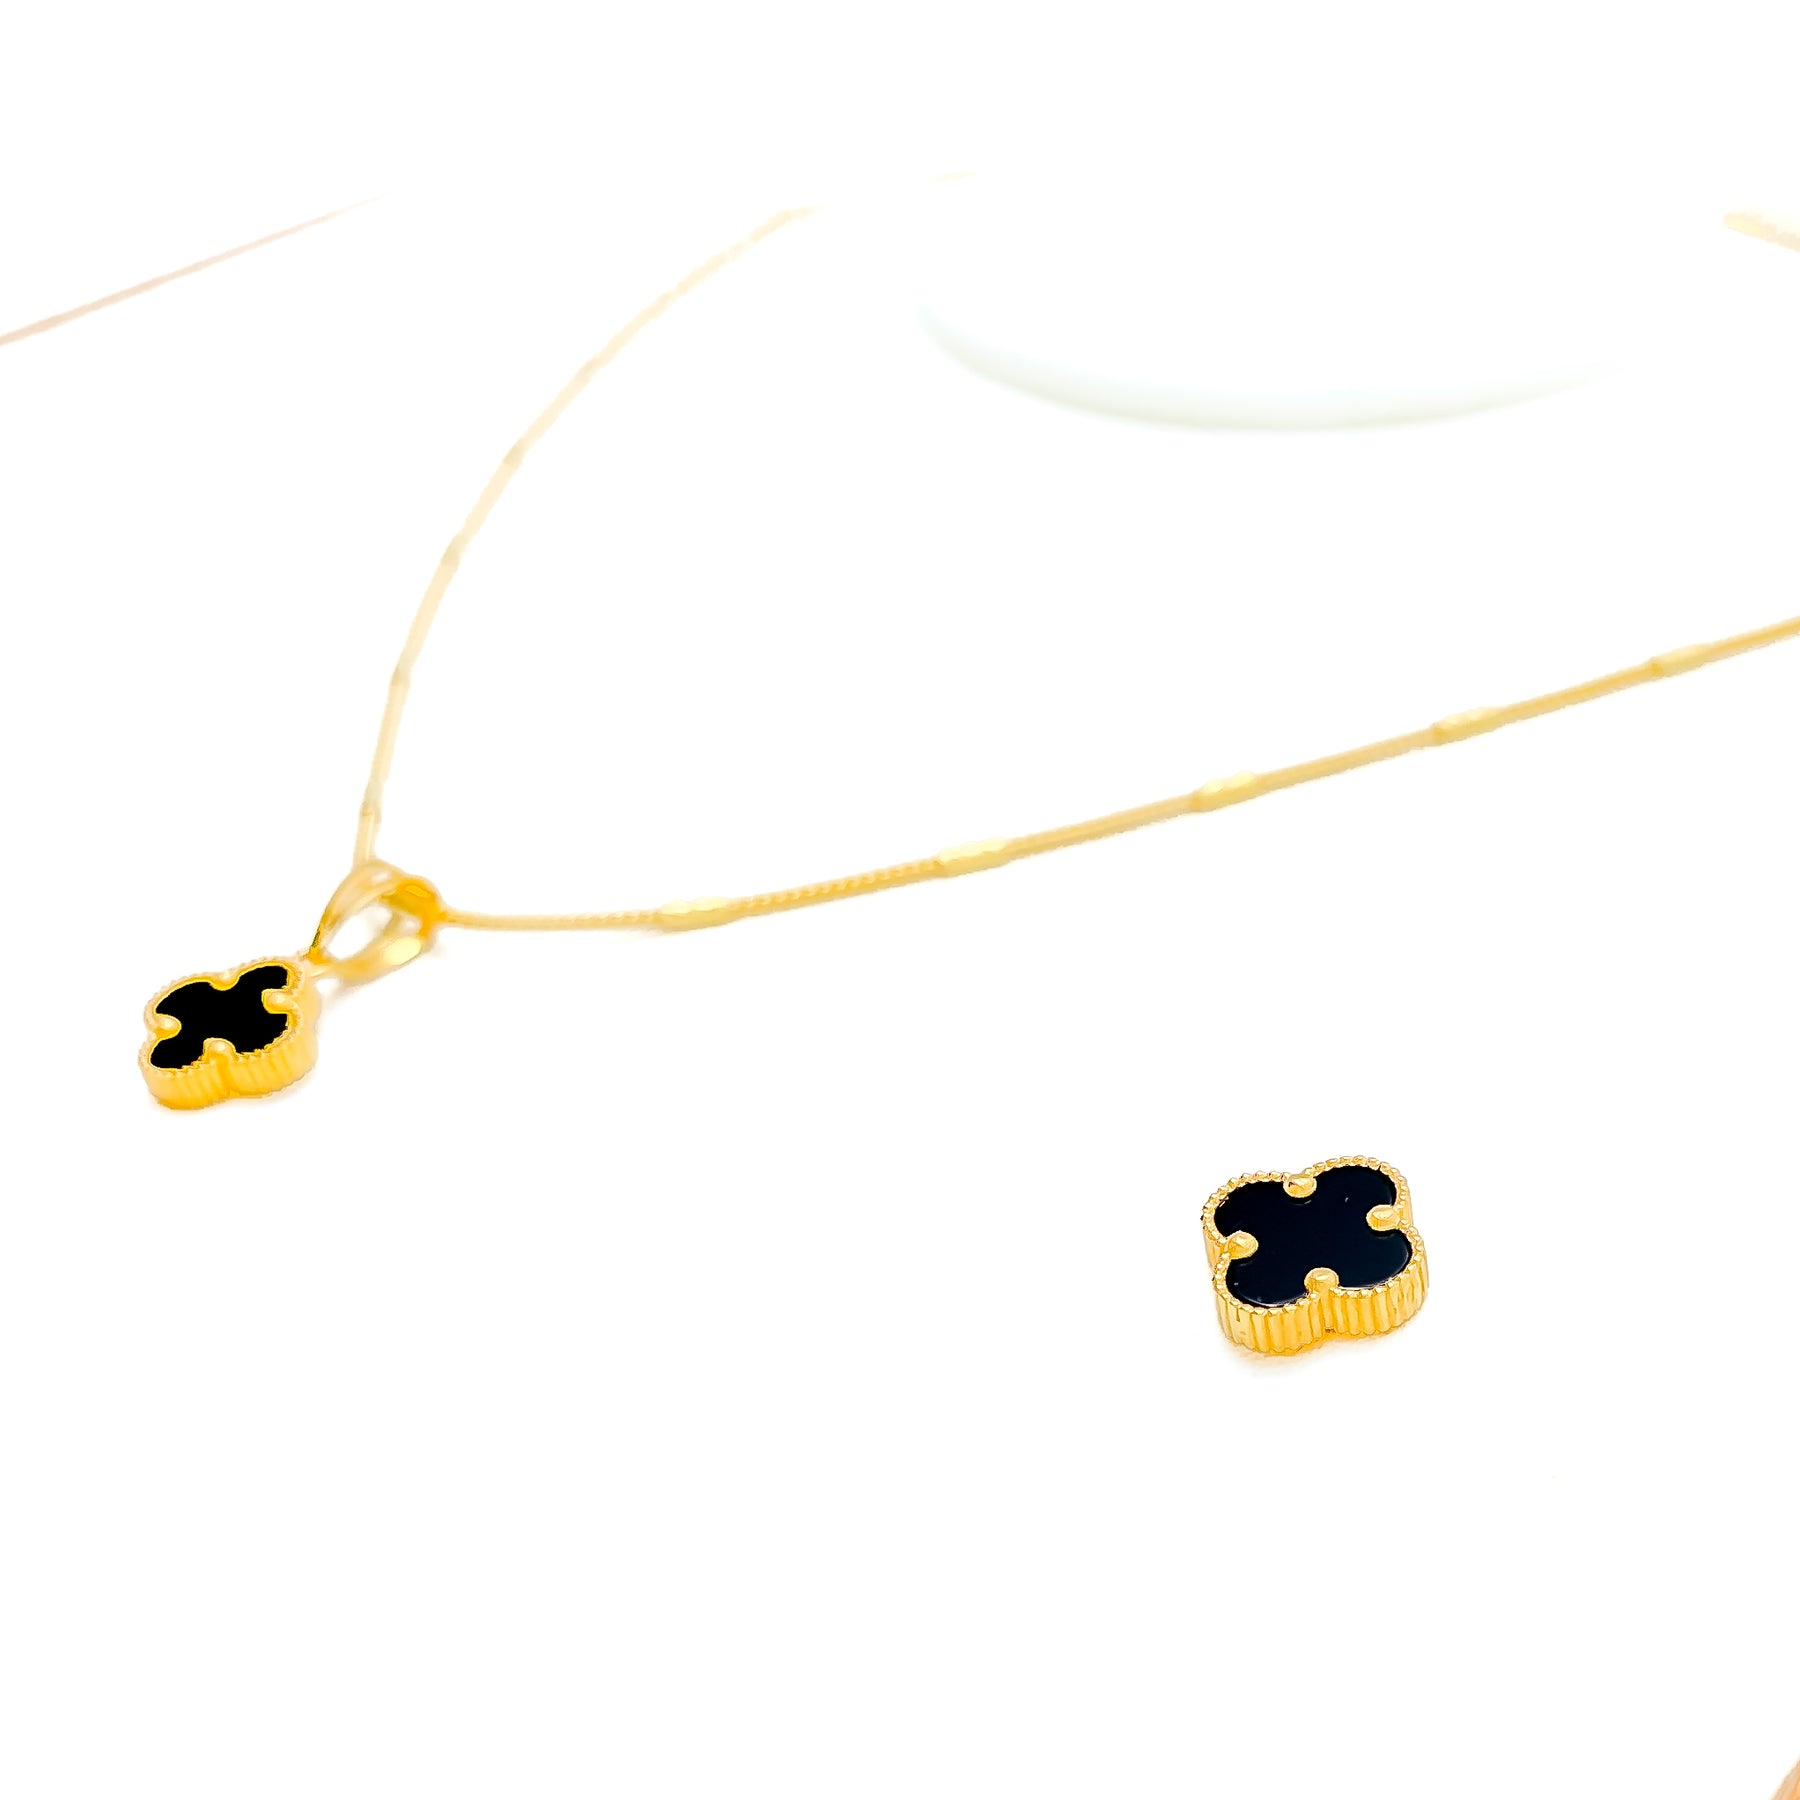 21K Gold Black Clover Necklace